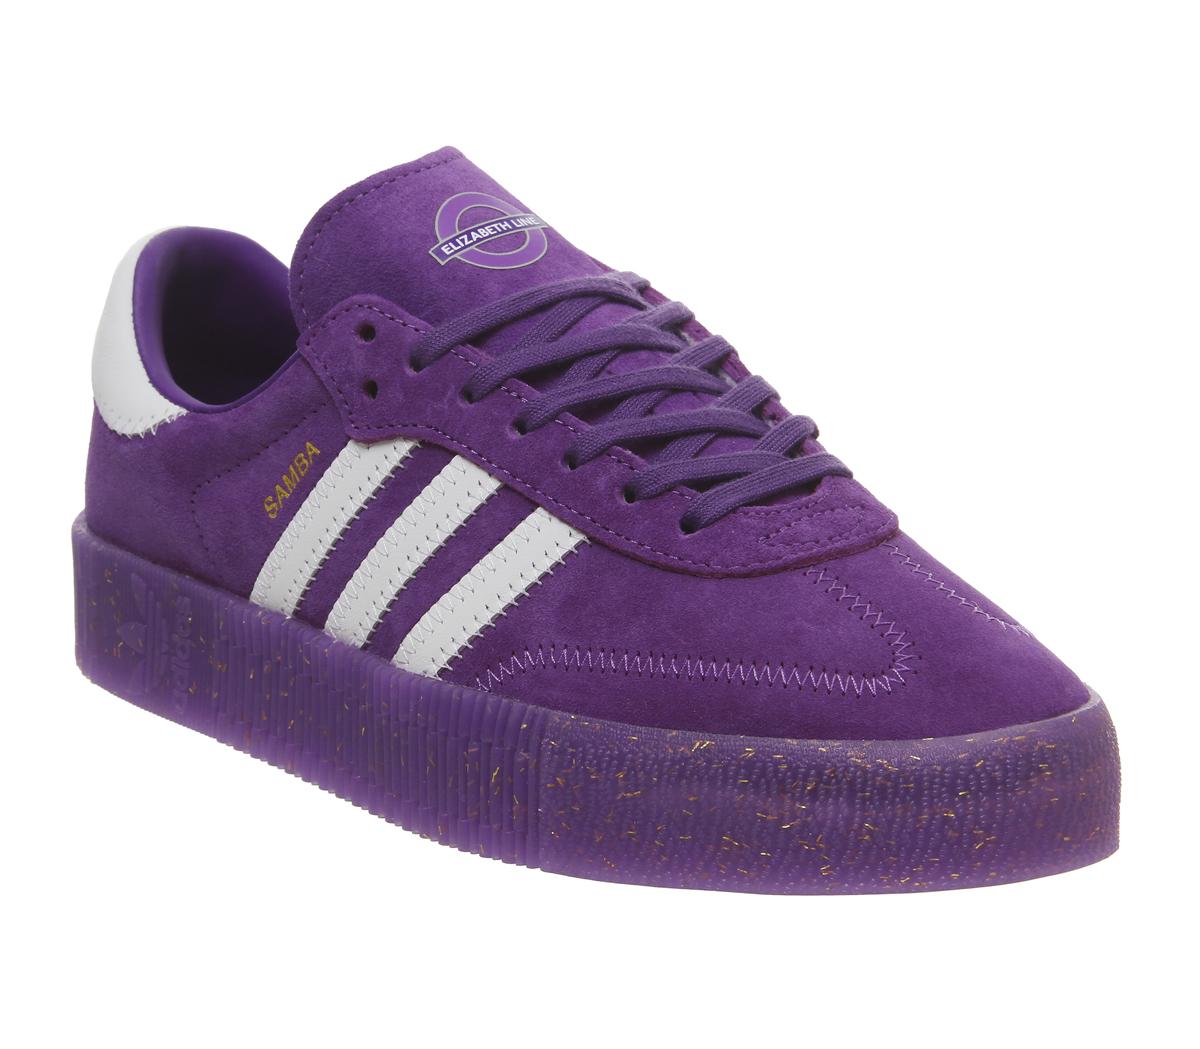 adidas originals samba rose trainers in purple suede